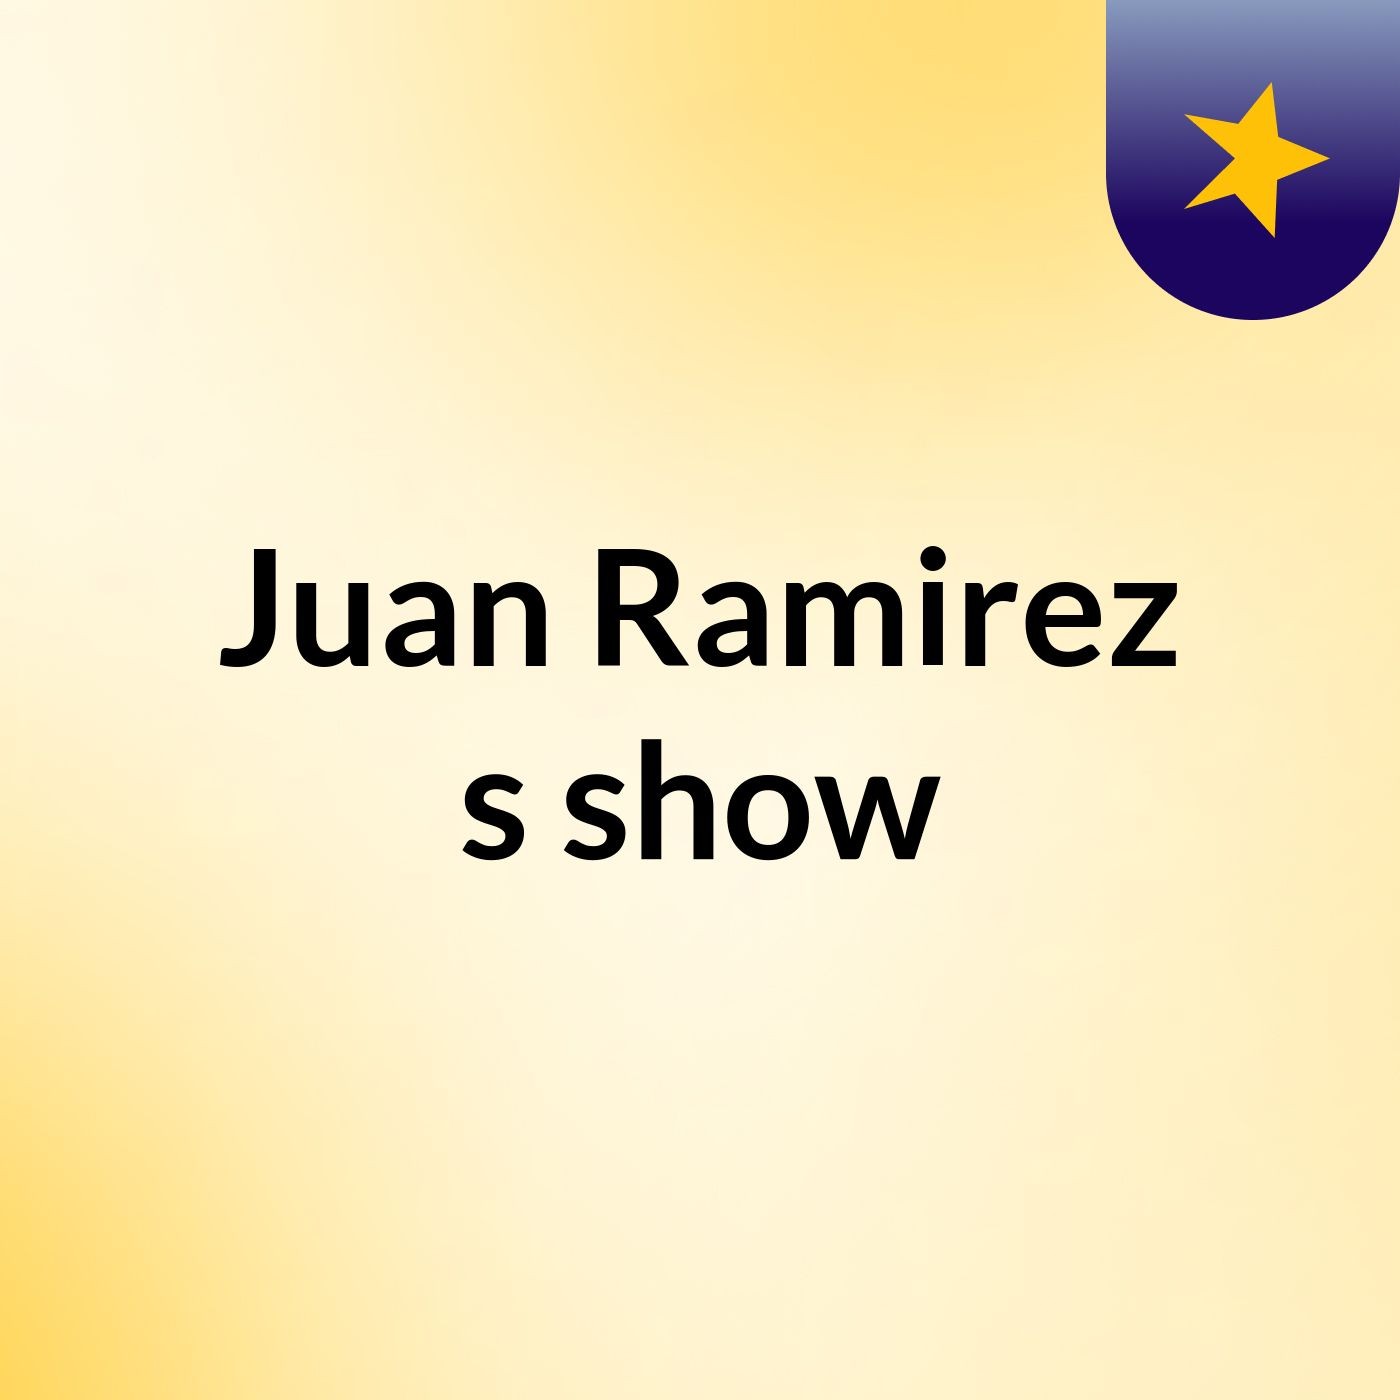 Juan Ramirez's show